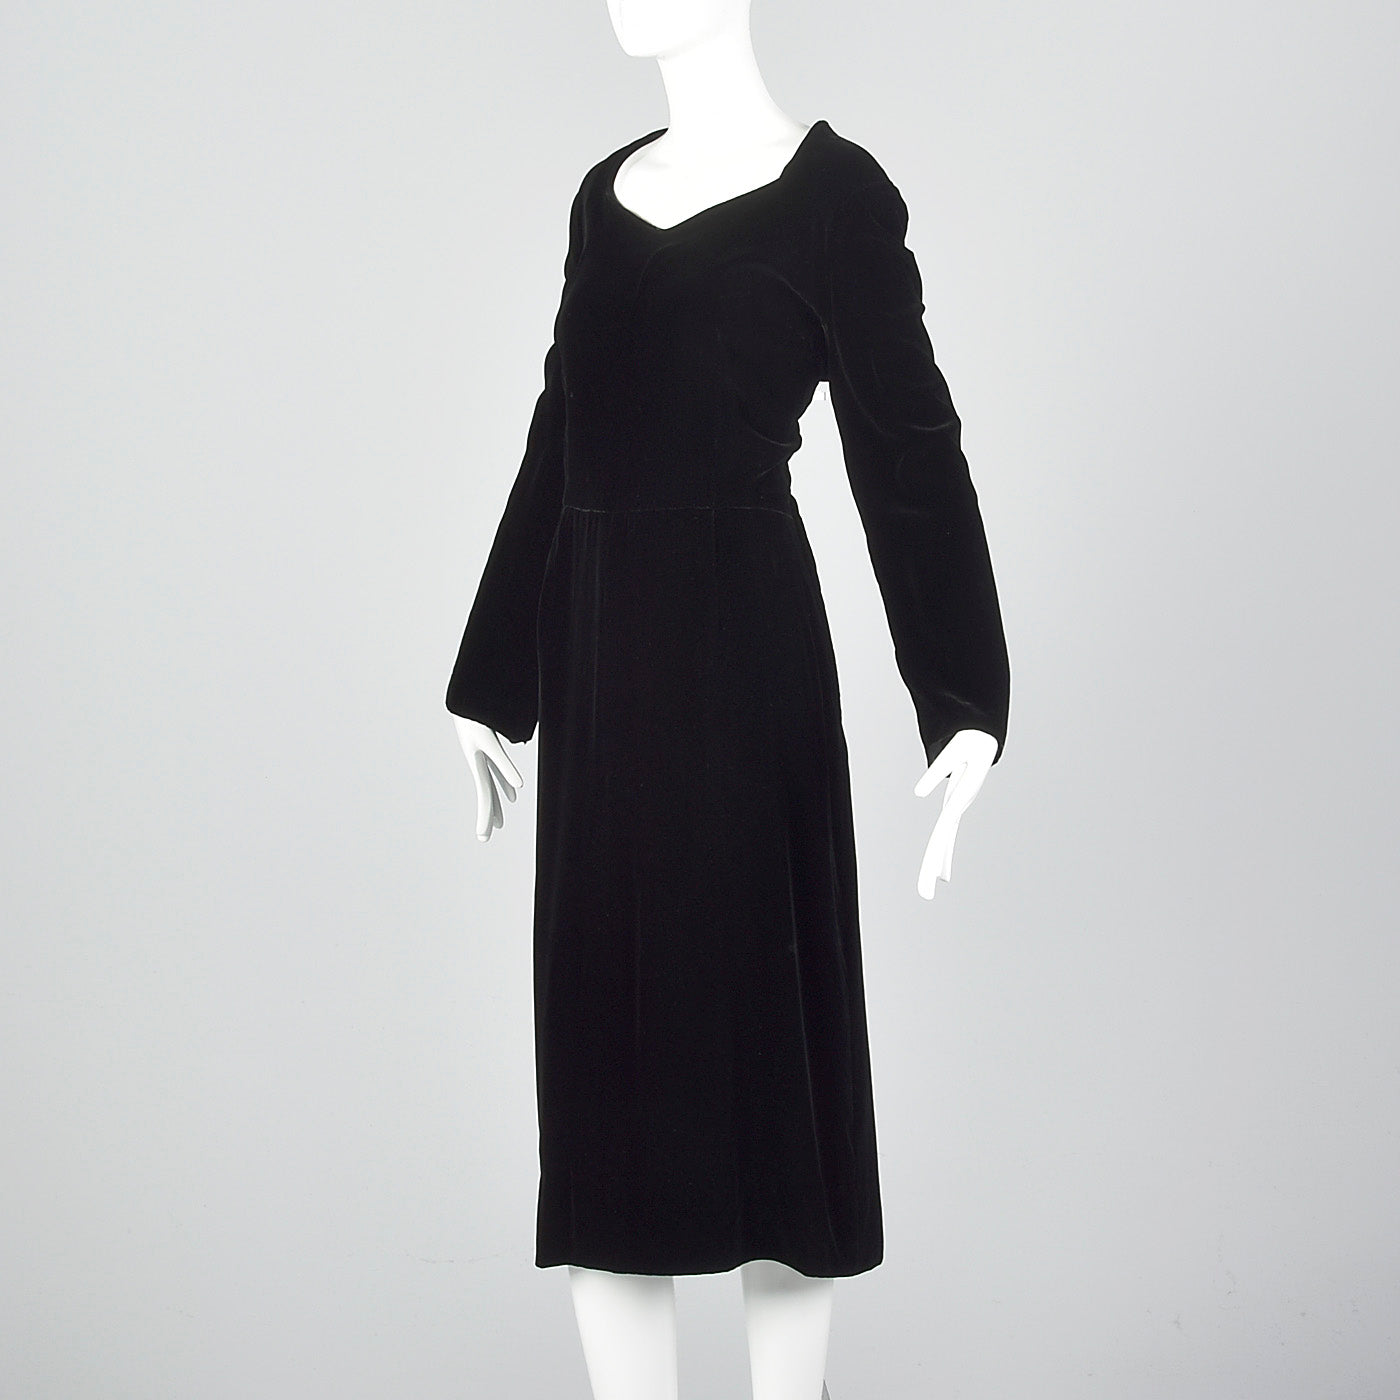 1950s Black Velvet Dress with Sweetheart Neckline